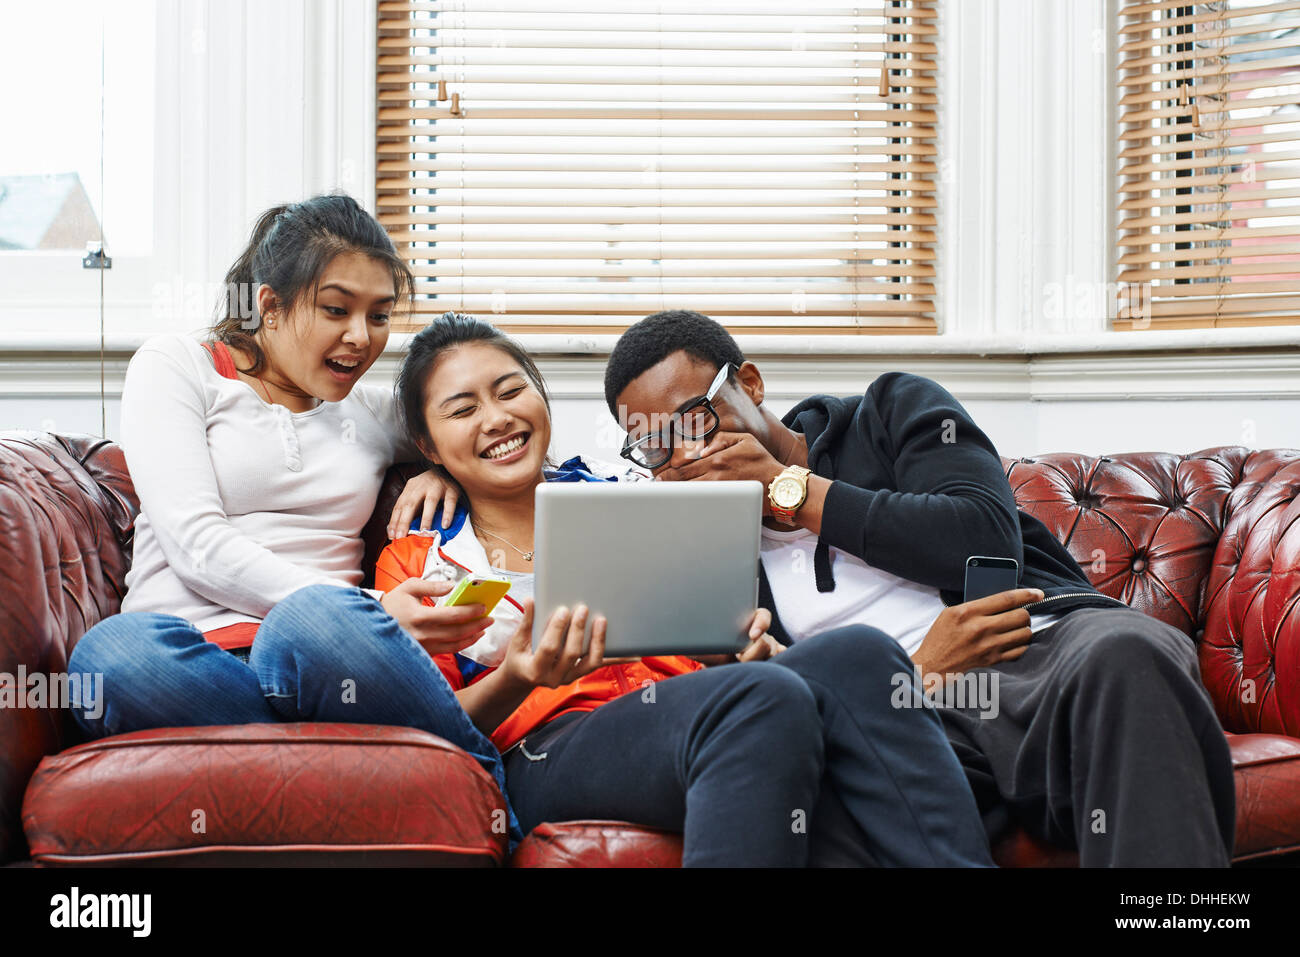 Tres jóvenes sentados en un sofá riendo de tableta digital Foto de stock